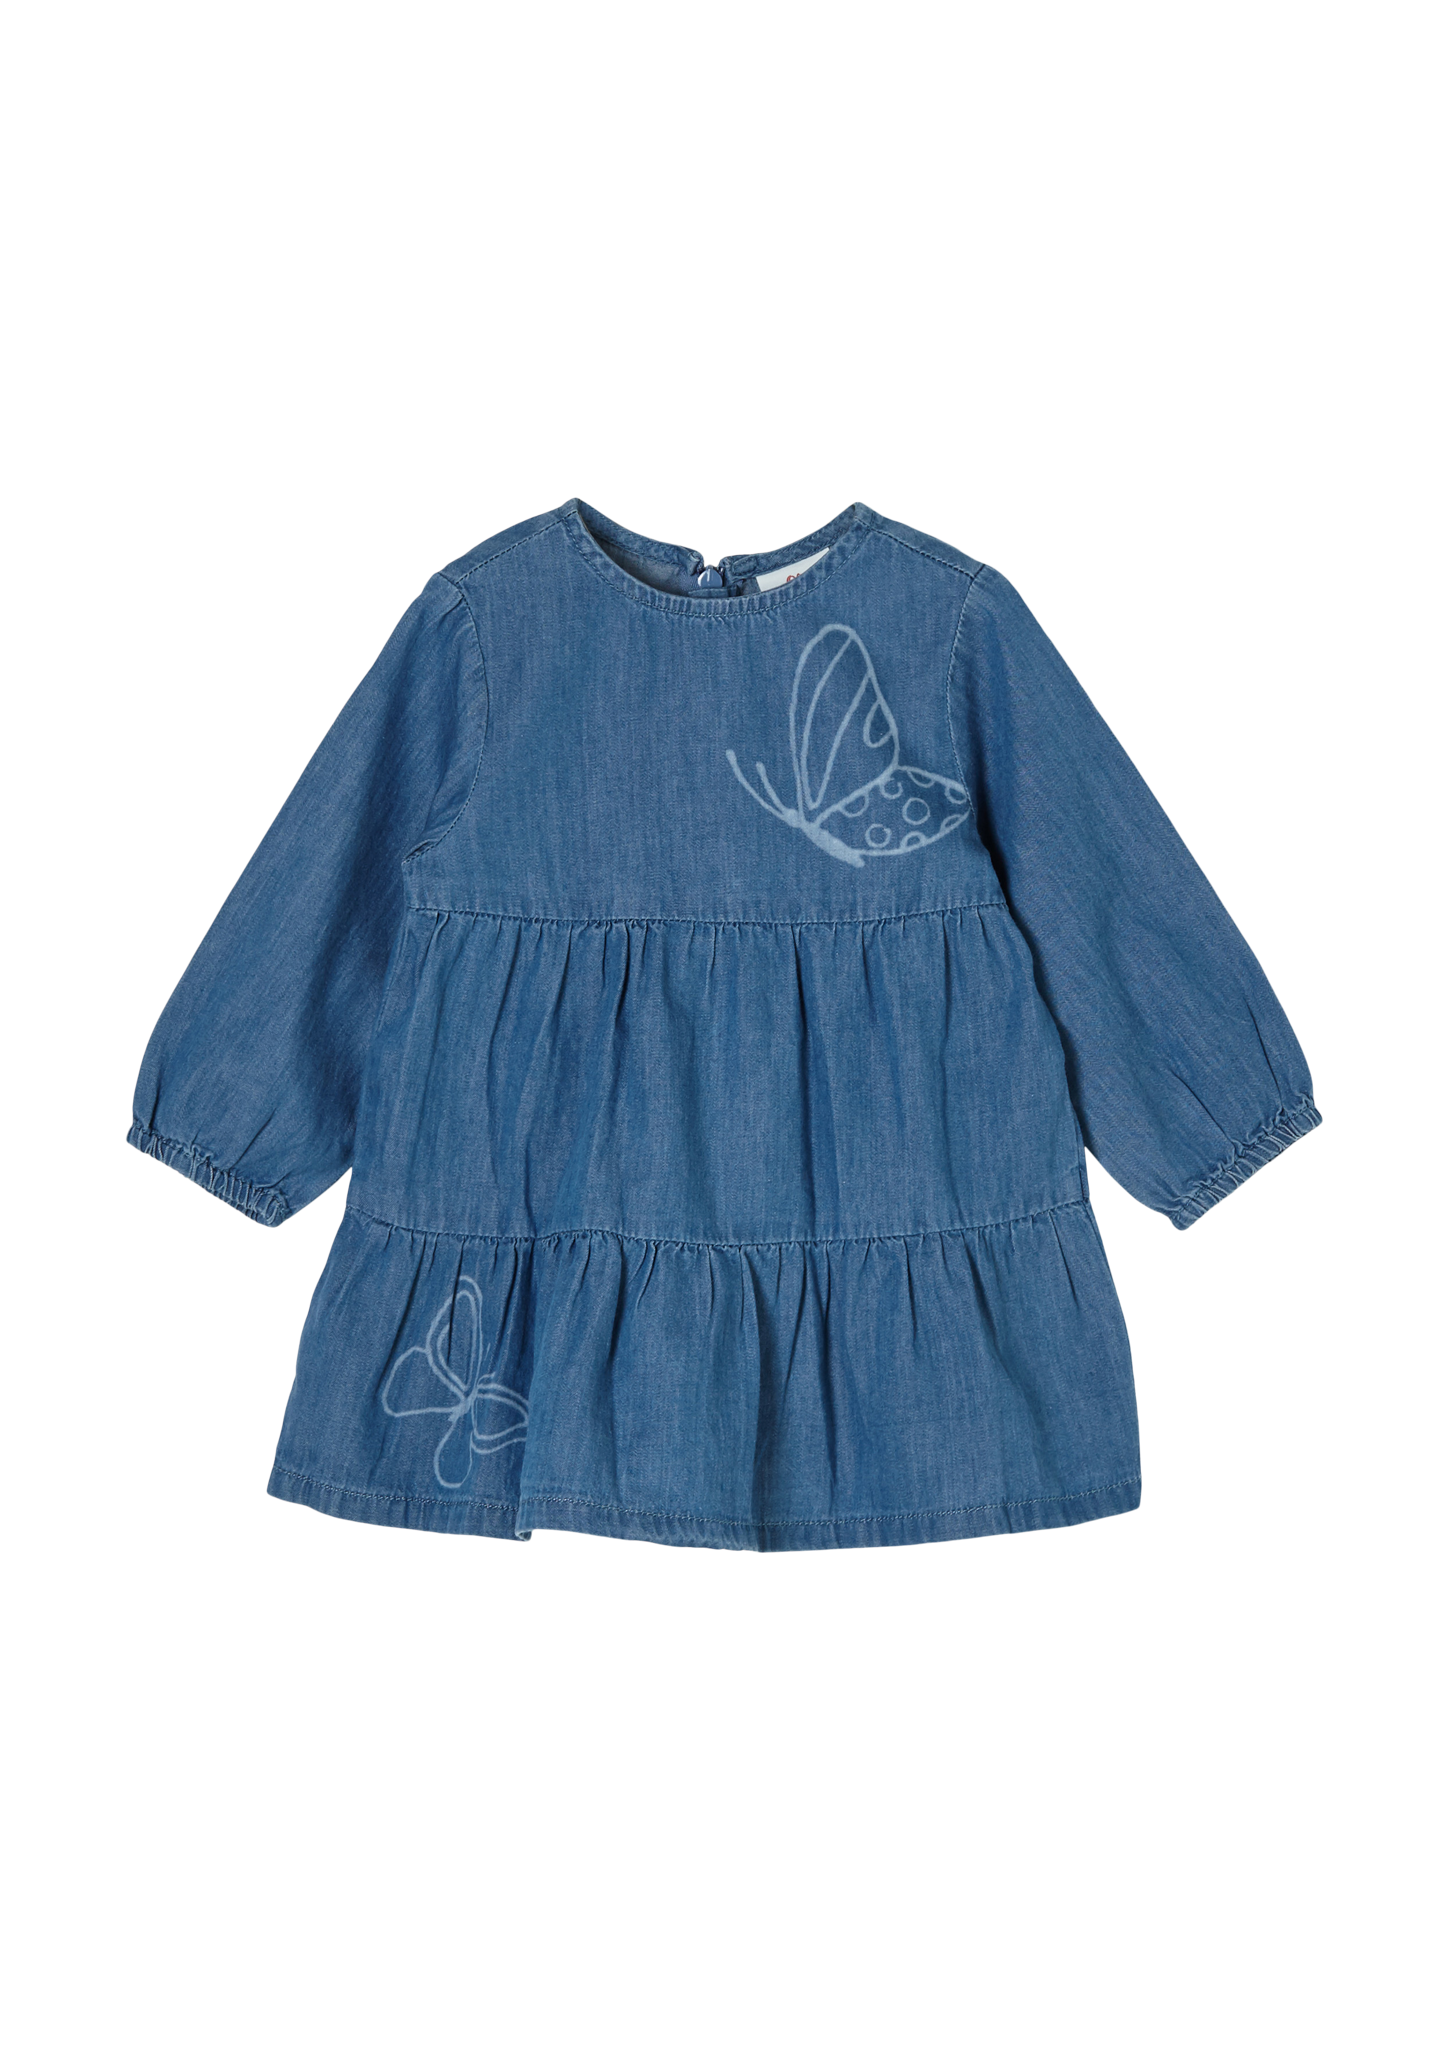 s.Oliver - Leichtes Jeanskleid mit Schmetterlingen, Babys, blau von s.Oliver